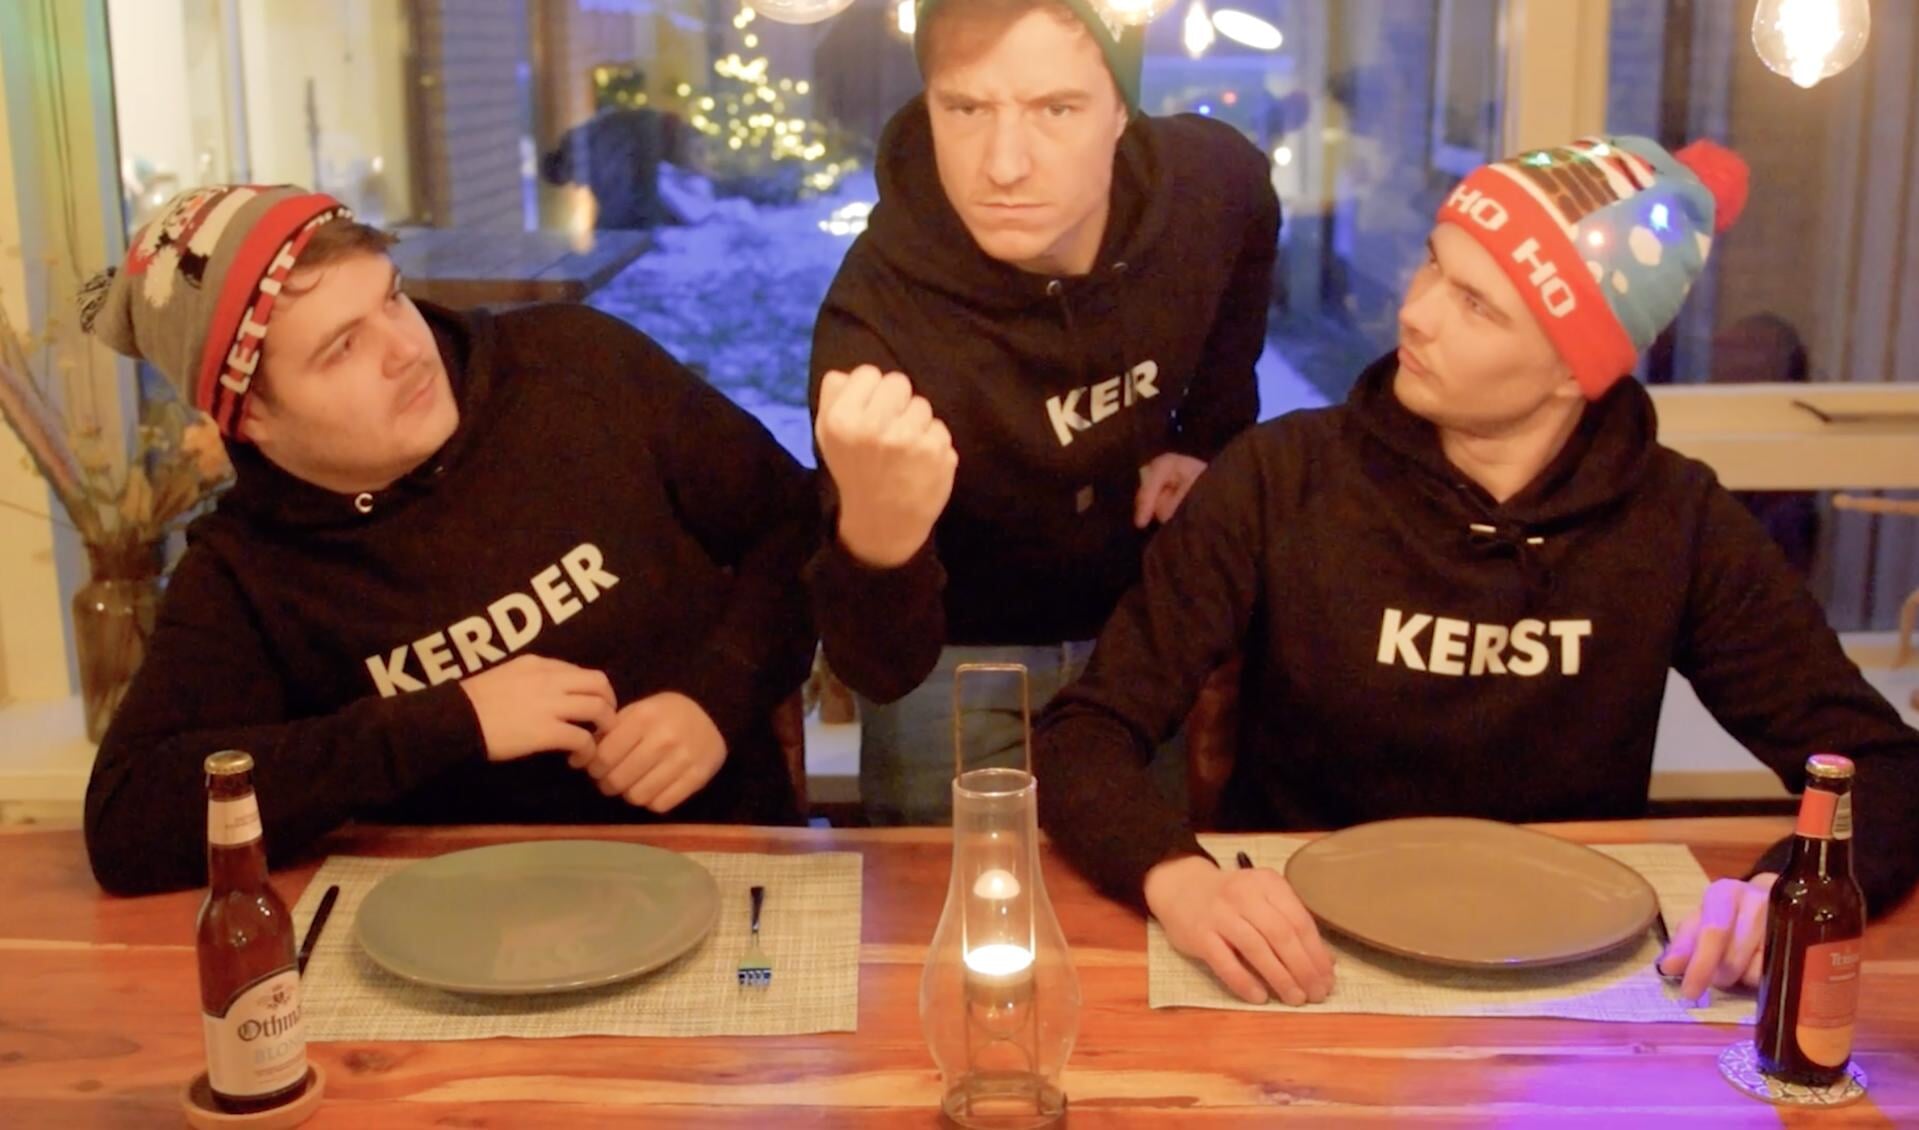 Tom Schepers, Jan Willem Kolkman en Kees Roelofsen in de clip van 'Kerstballers'.